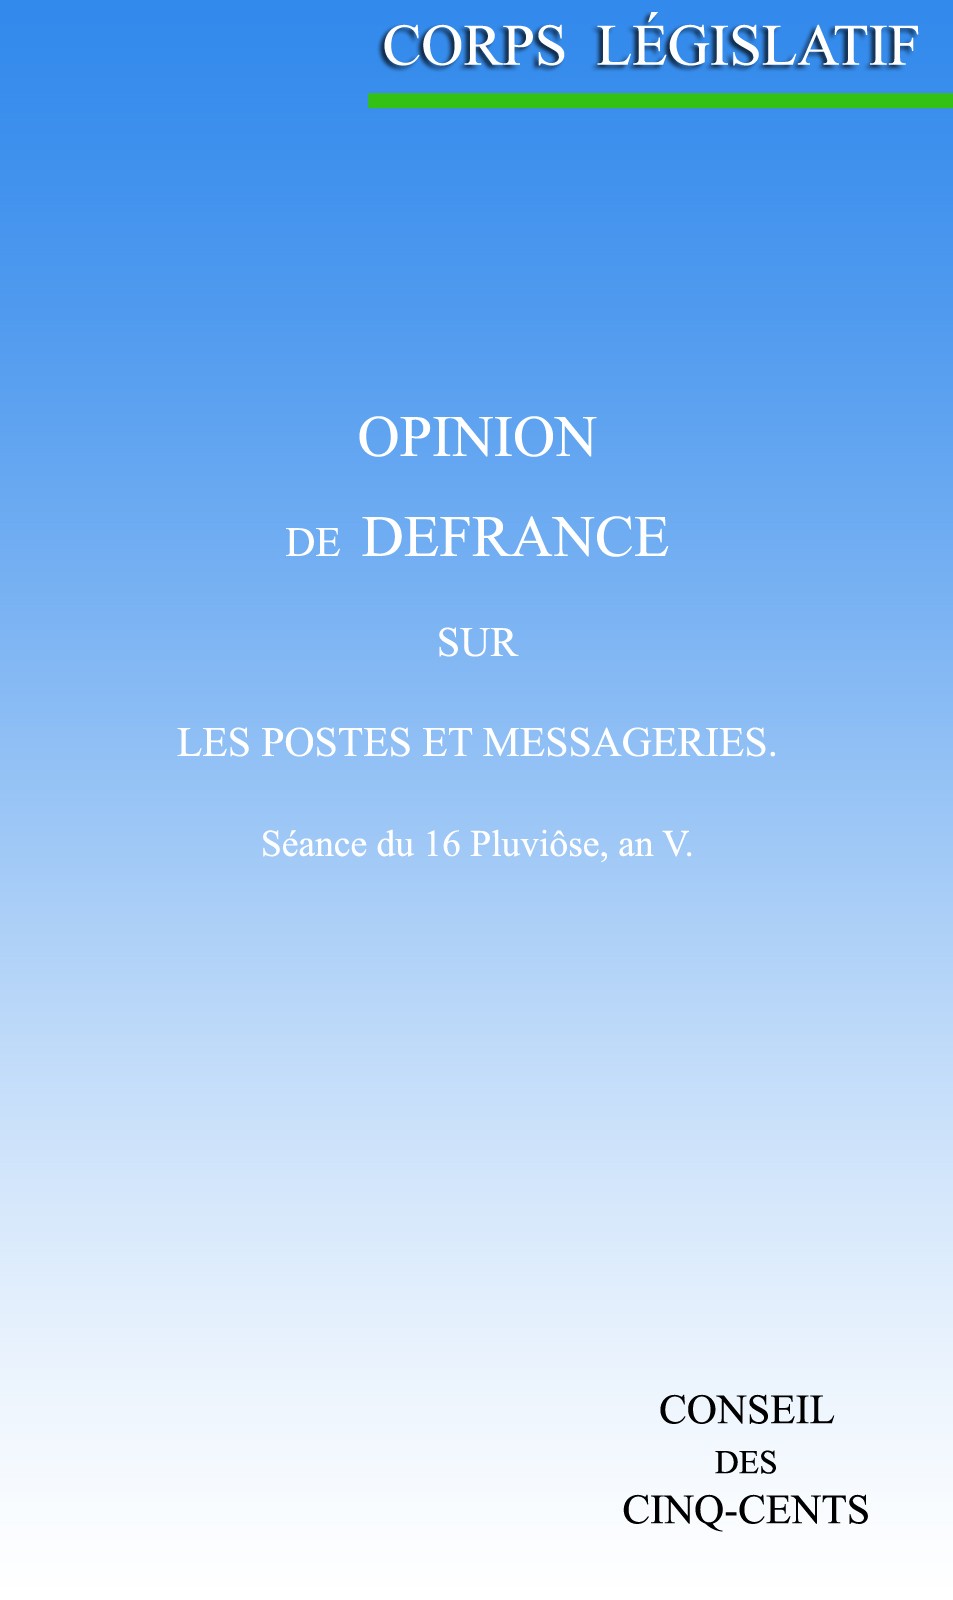 Opinion de Defrance, sur les postes et messageries: Séance du 16 Pluviôse, an V